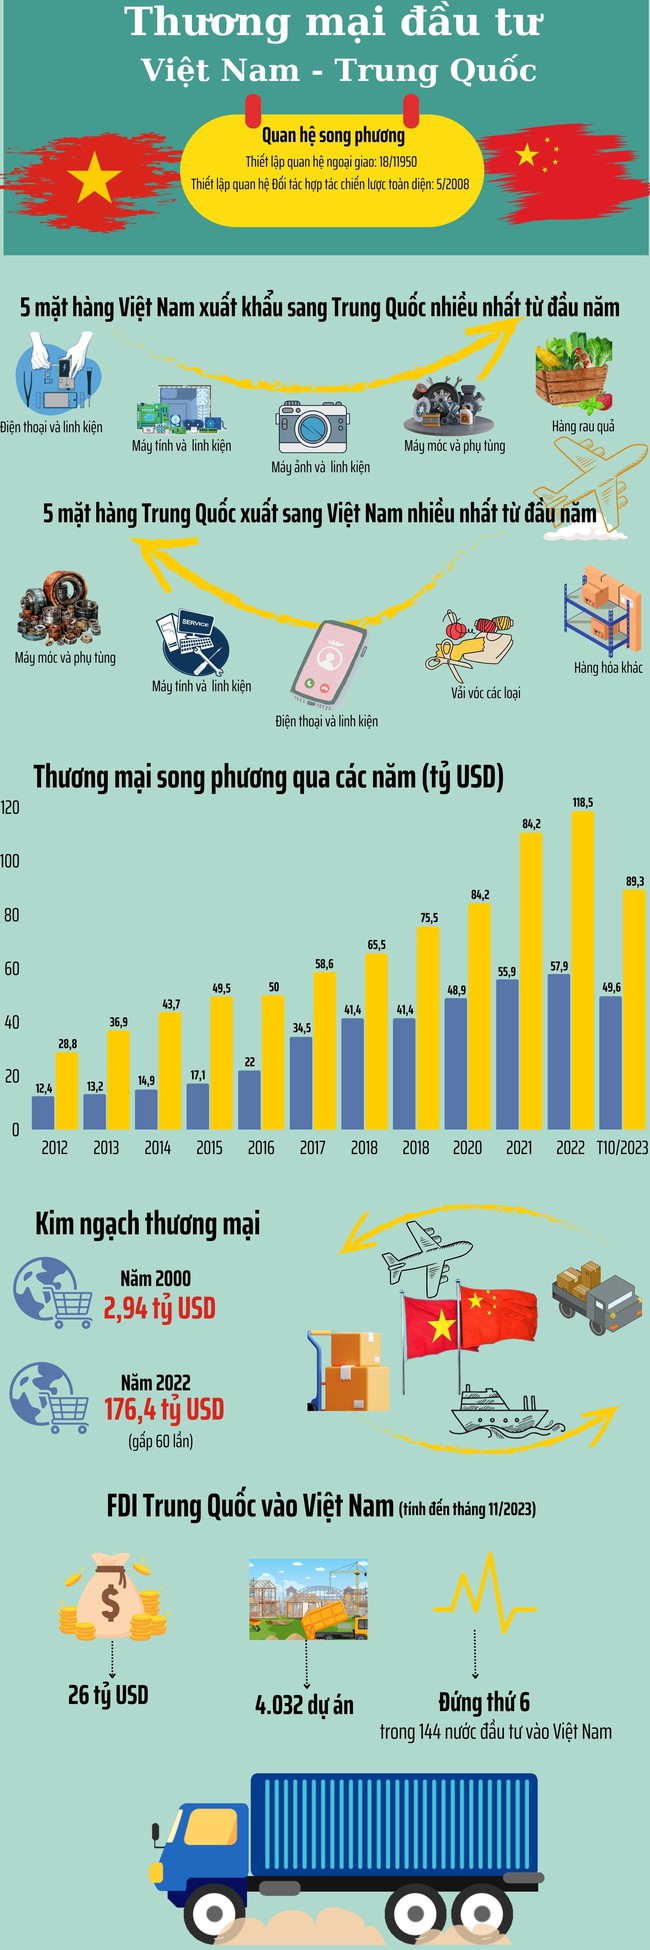 Thương mại Việt Nam - Trung Quốc vượt 130 tỷ USD - Ảnh 1.